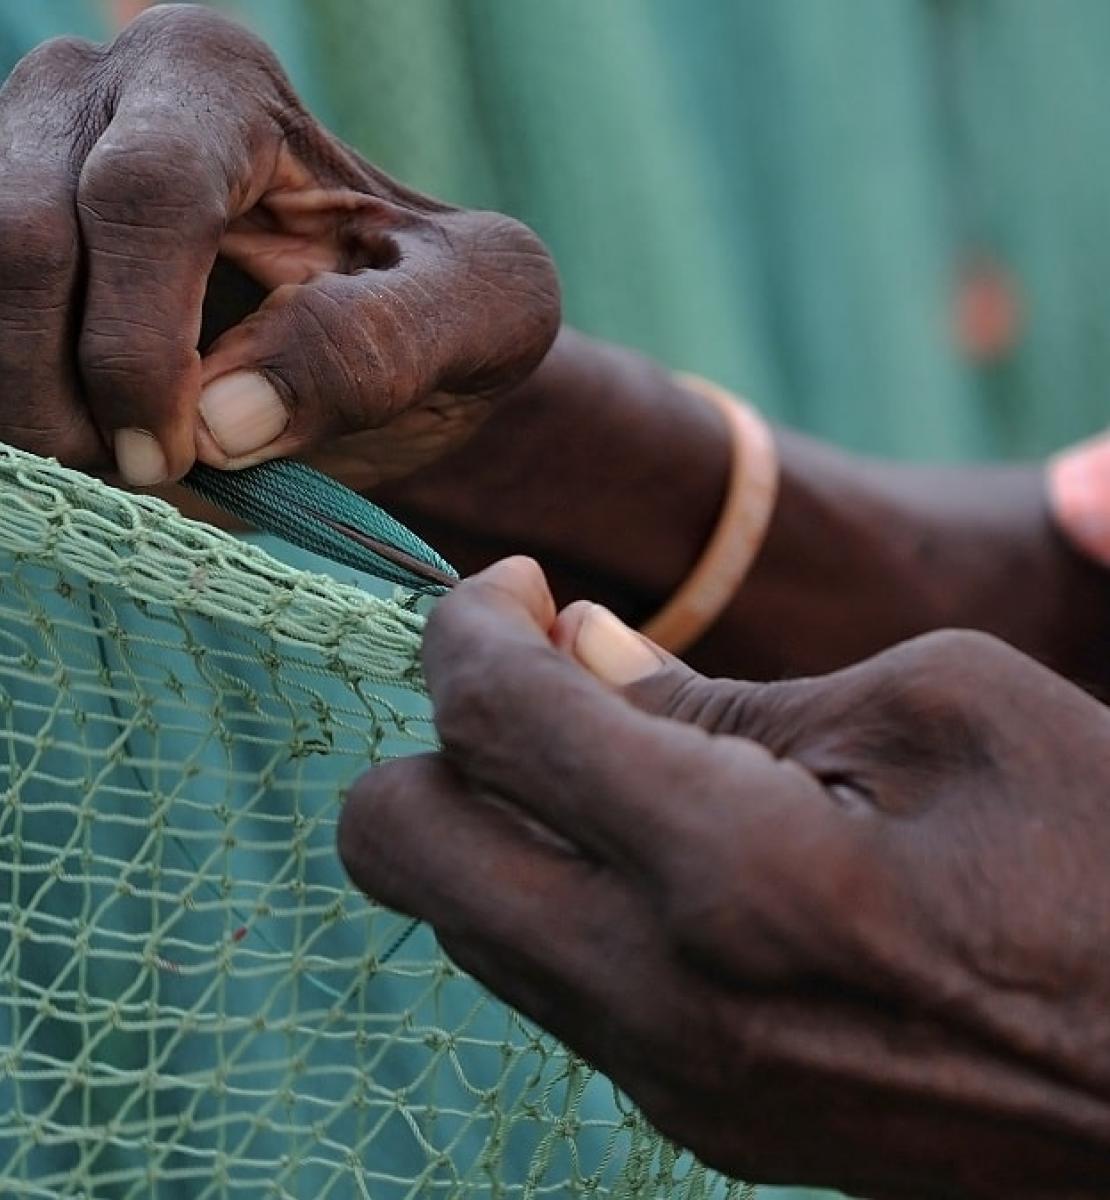 Gros plan sur les mains d'une femme en train de tisser un filet de pêcheur.